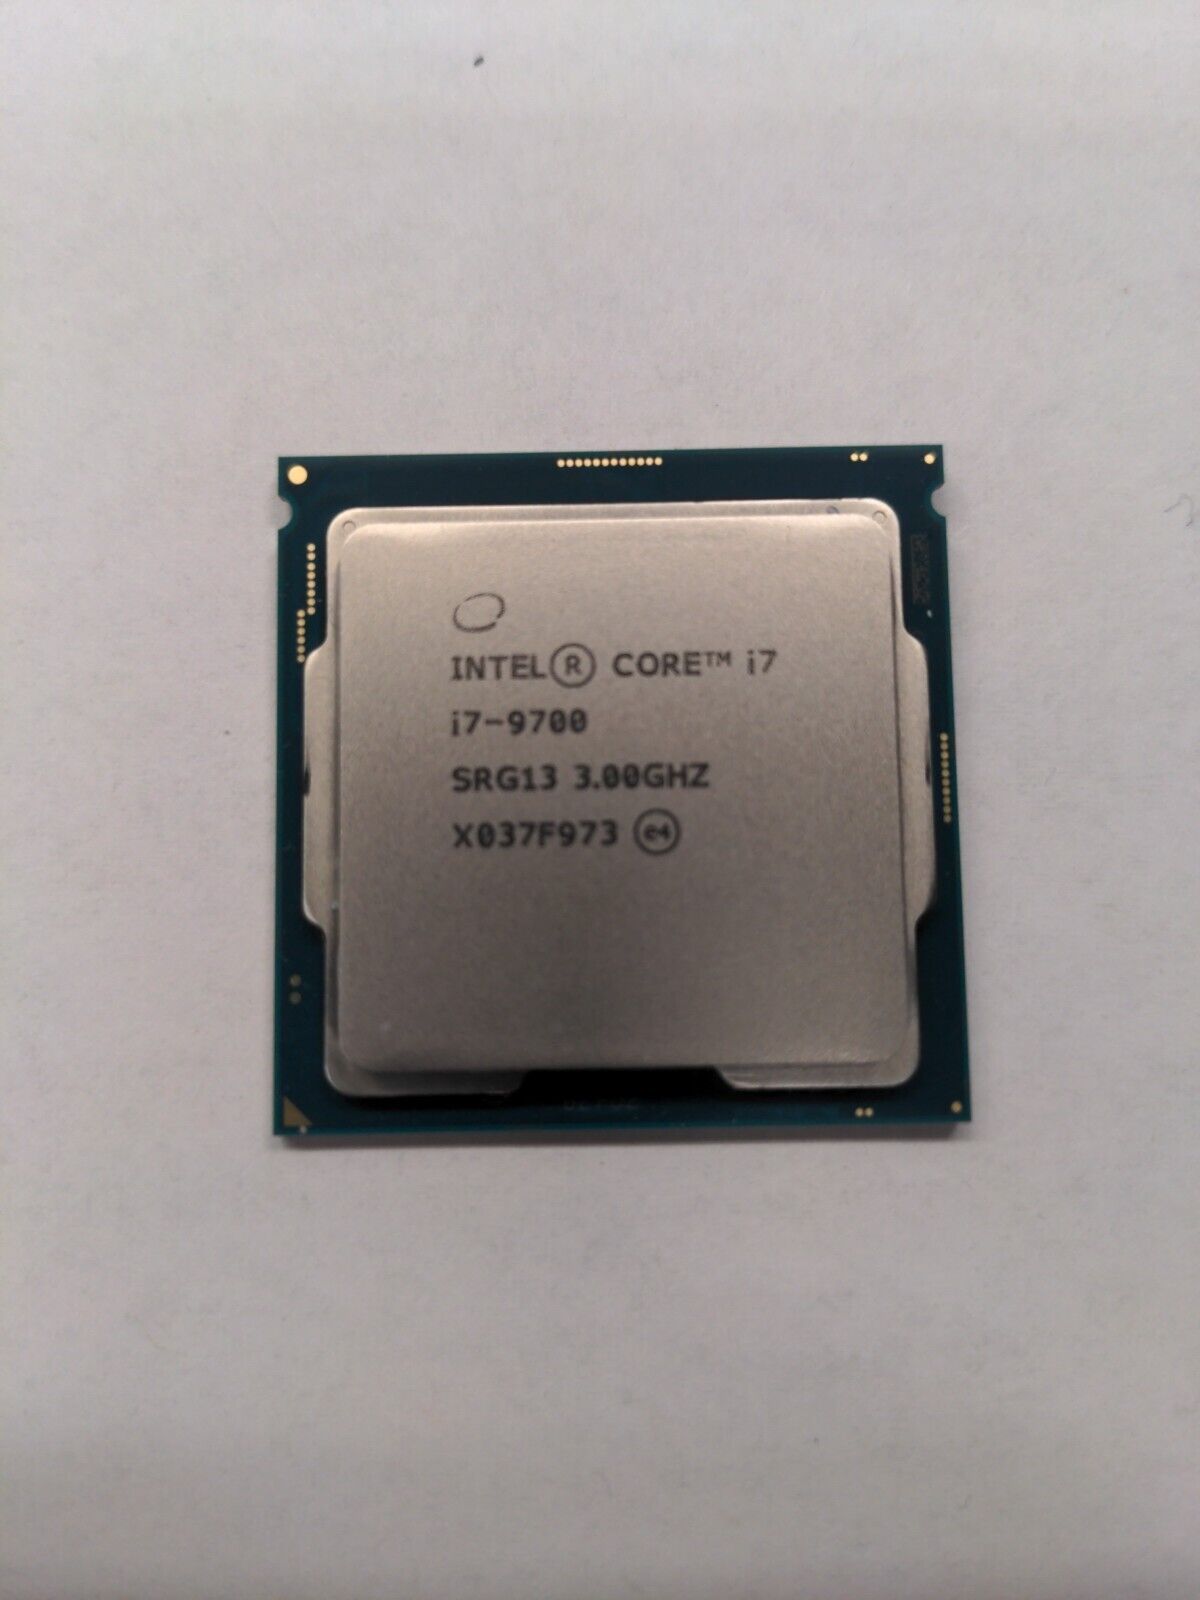 Intel Core i7-9700 3.0 GHz Octo-Core (SRG13) Processor